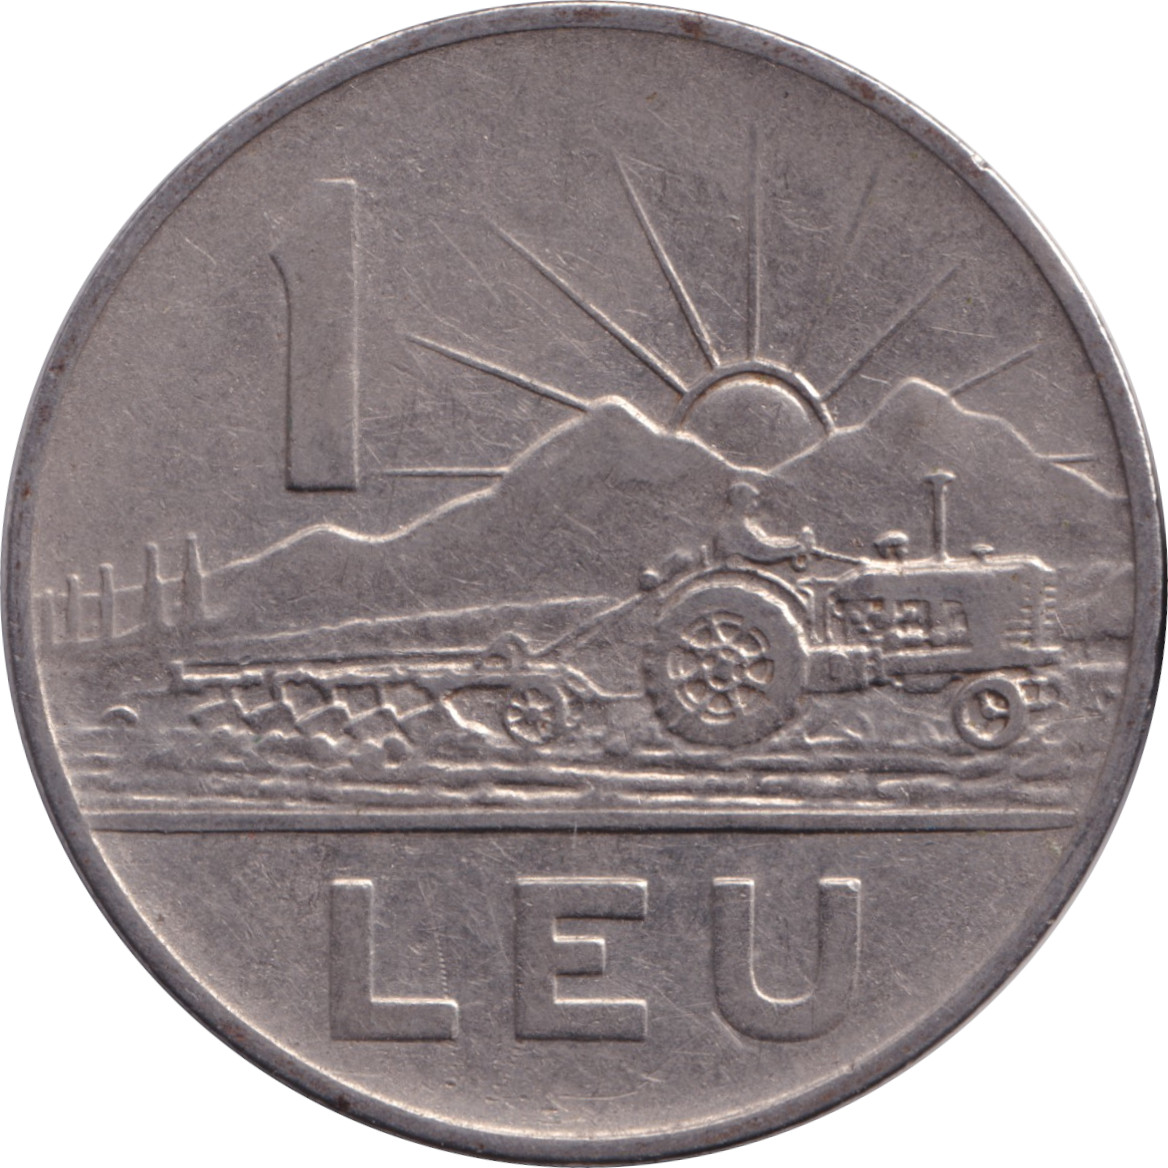 1 leu - République populaire